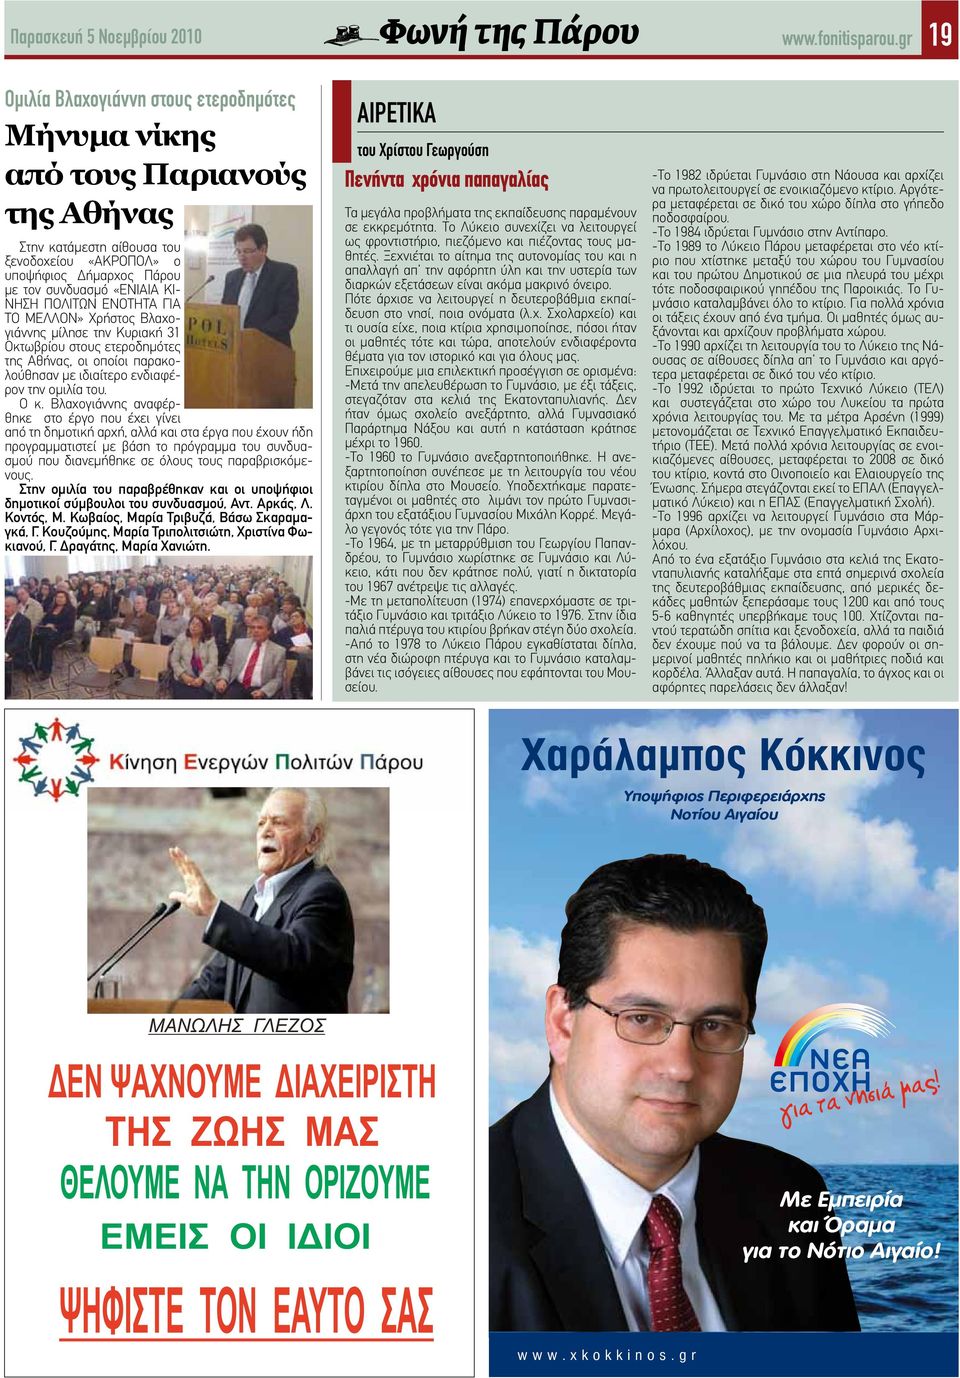 ΠΟΛΙΤΩΝ ΕΝΟΤΗΤΑ ΓΙΑ ΤΟ ΜΕΛΛΟΝ» Χρήστος Βλαχογιάννης μίλησε την Κυριακή 31 Οκτωβρίου στους ετεροδημότες της Αθήνας, οι οποίοι παρακολούθησαν με ιδιαίτερο ενδιαφέρον την ομιλία του. Ο κ.